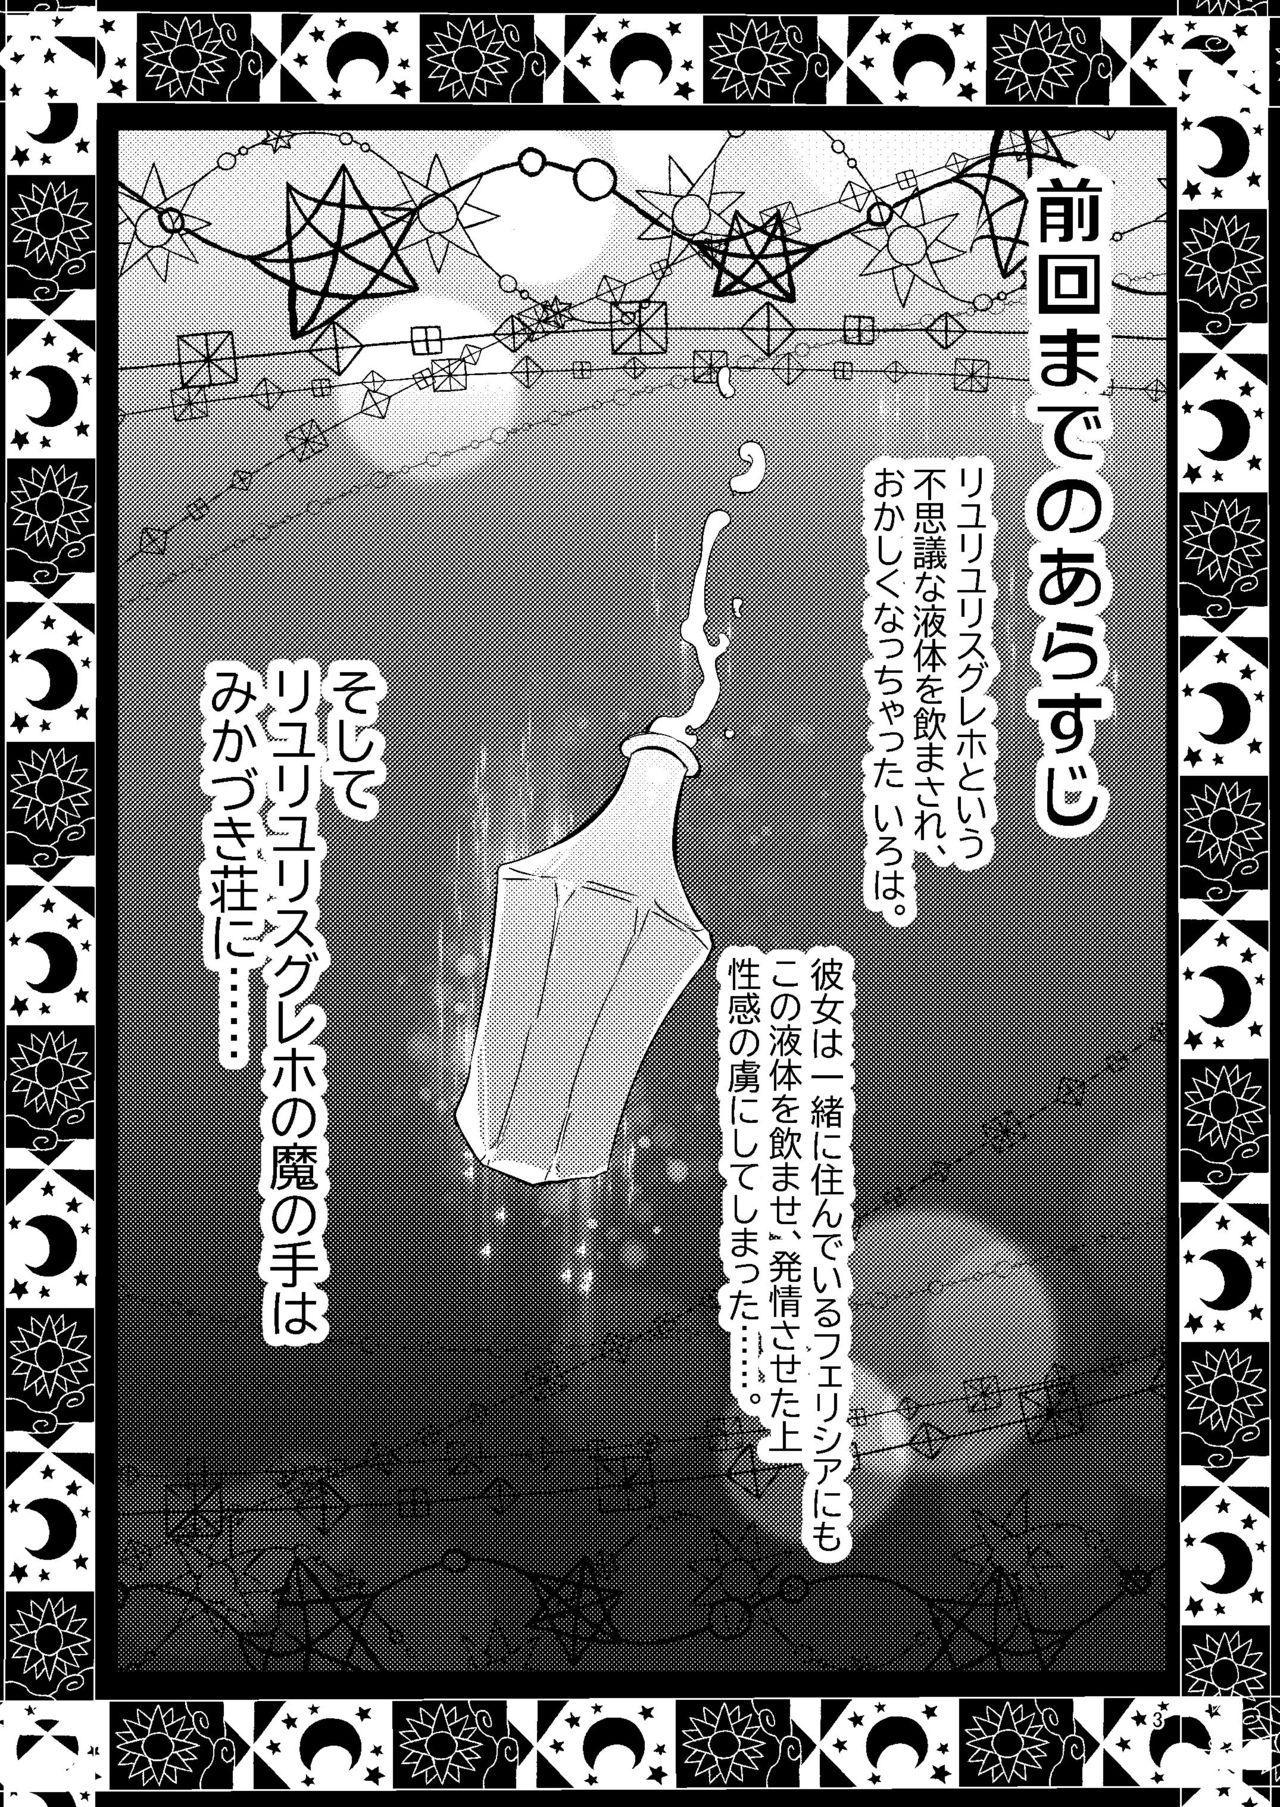 Seduction Riyuriyu Risugureho no Uwasa 3 - Puella magi madoka magica side story magia record Black Woman - Page 2